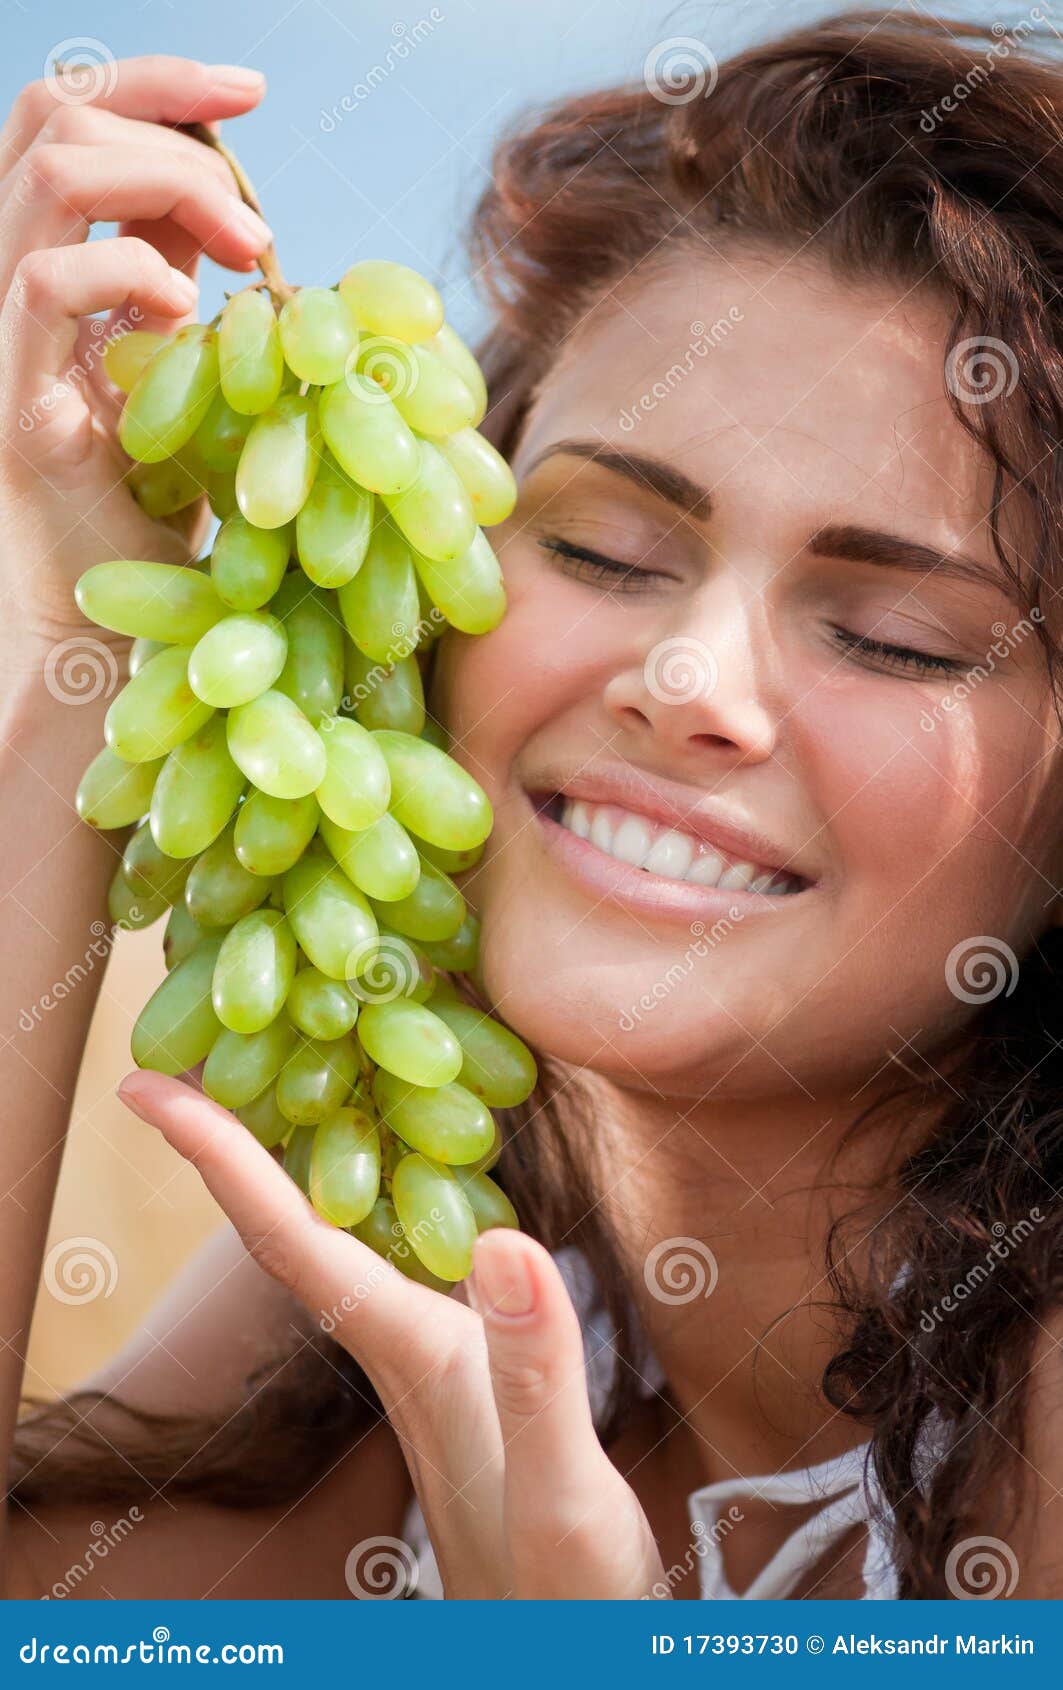 Девушка есть виноград. Женщина с виноградом. Красивая девушка с виноградом. Фотосессия с виноградом. Девушка ест виноград.